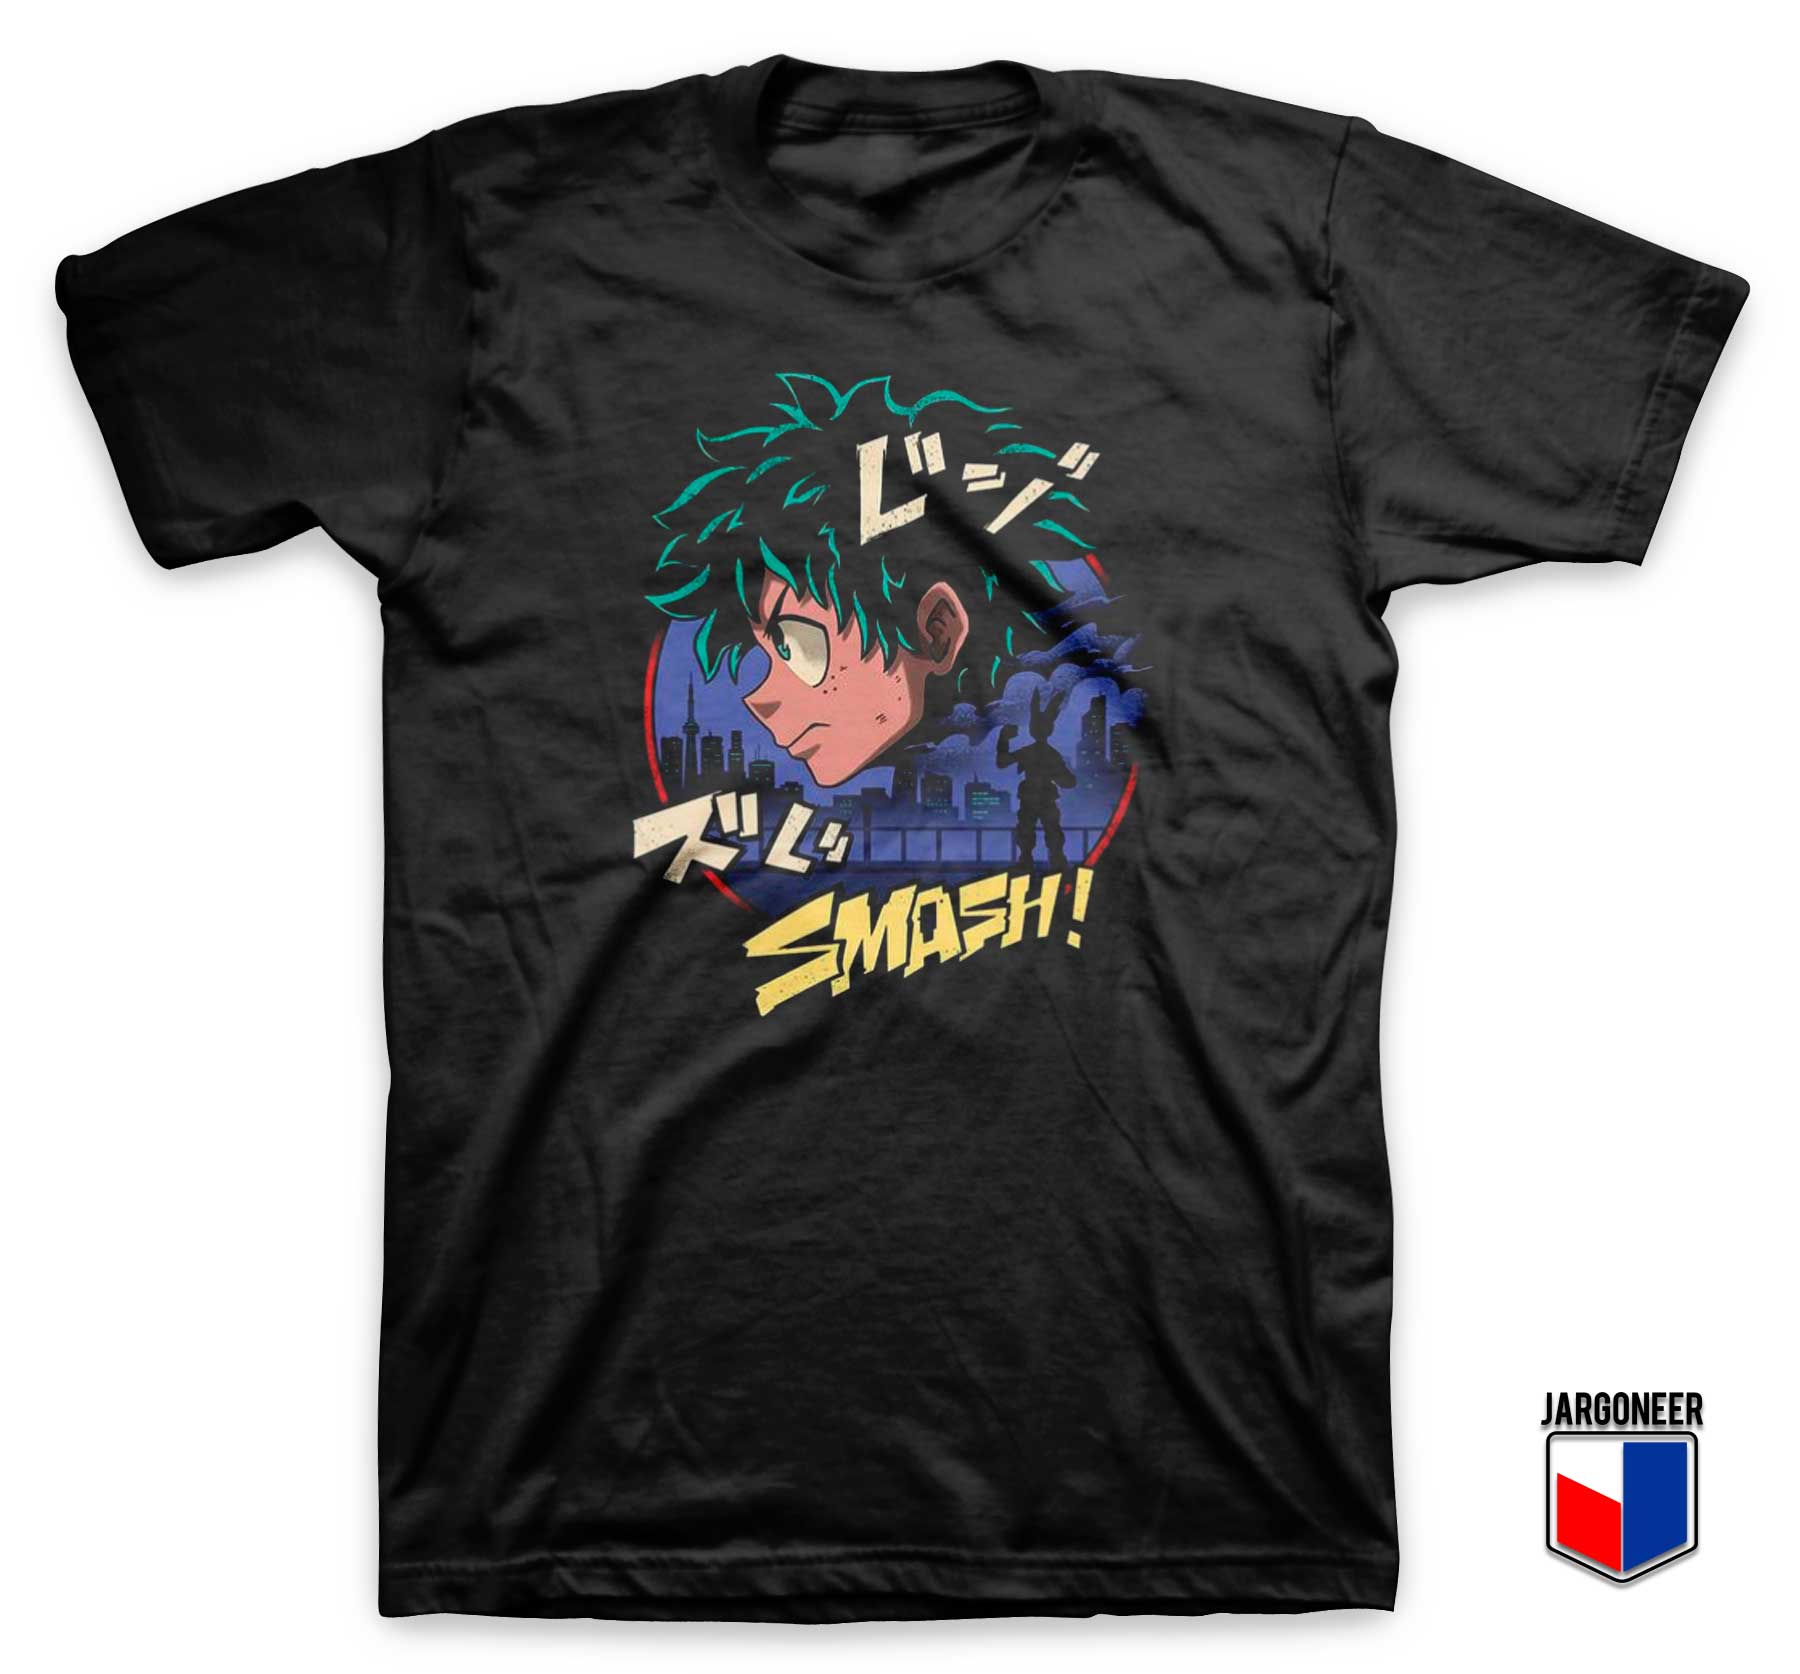 The Heroic Student Smash T Shirt - Shop Unique Graphic Cool Shirt Designs